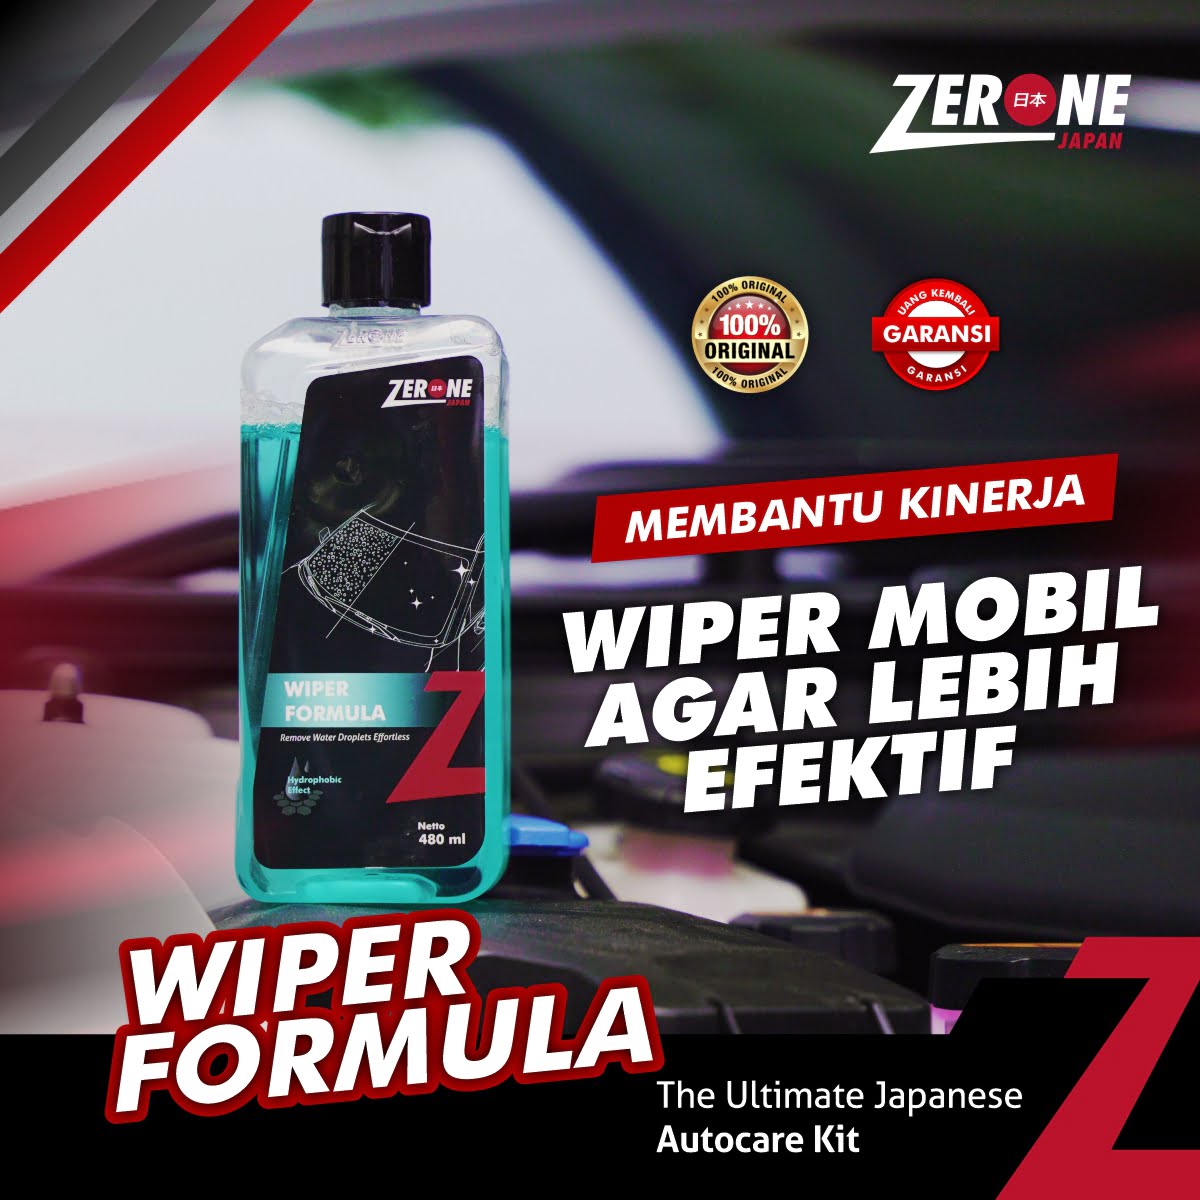 Zerone Japan - Wiper Formula